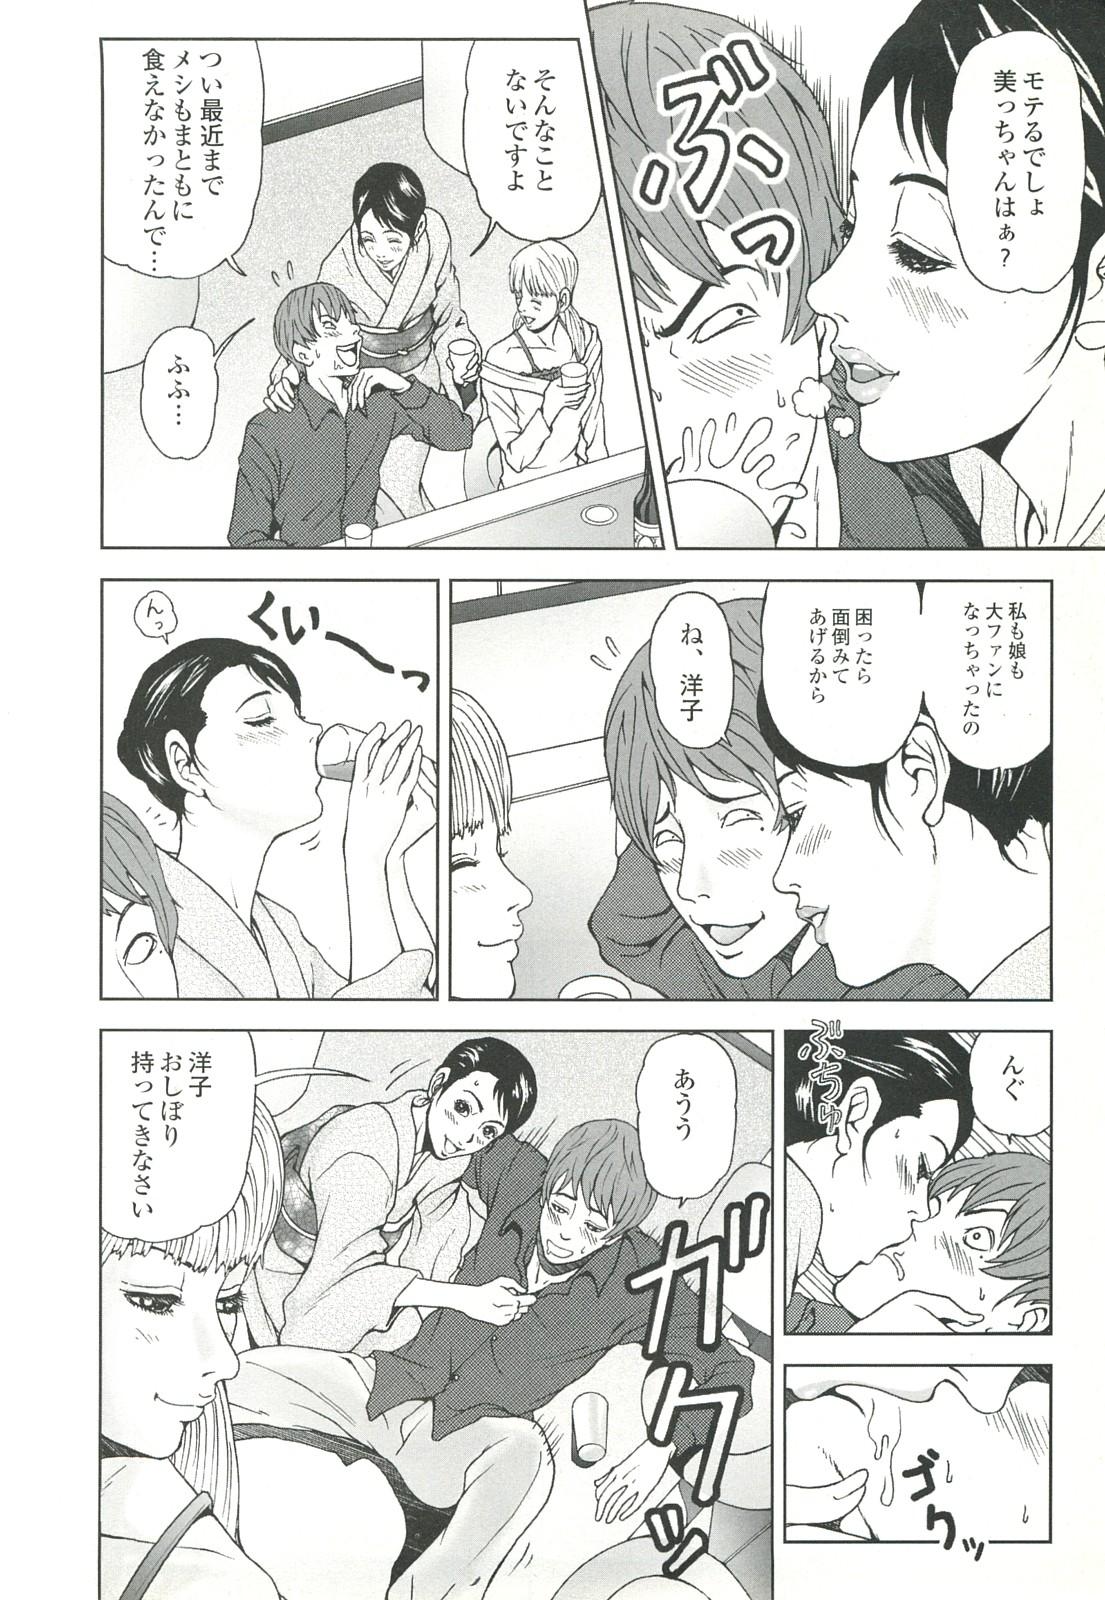 コミック裏モノJAPAN Vol.18 今井のりたつスペシャル号 31